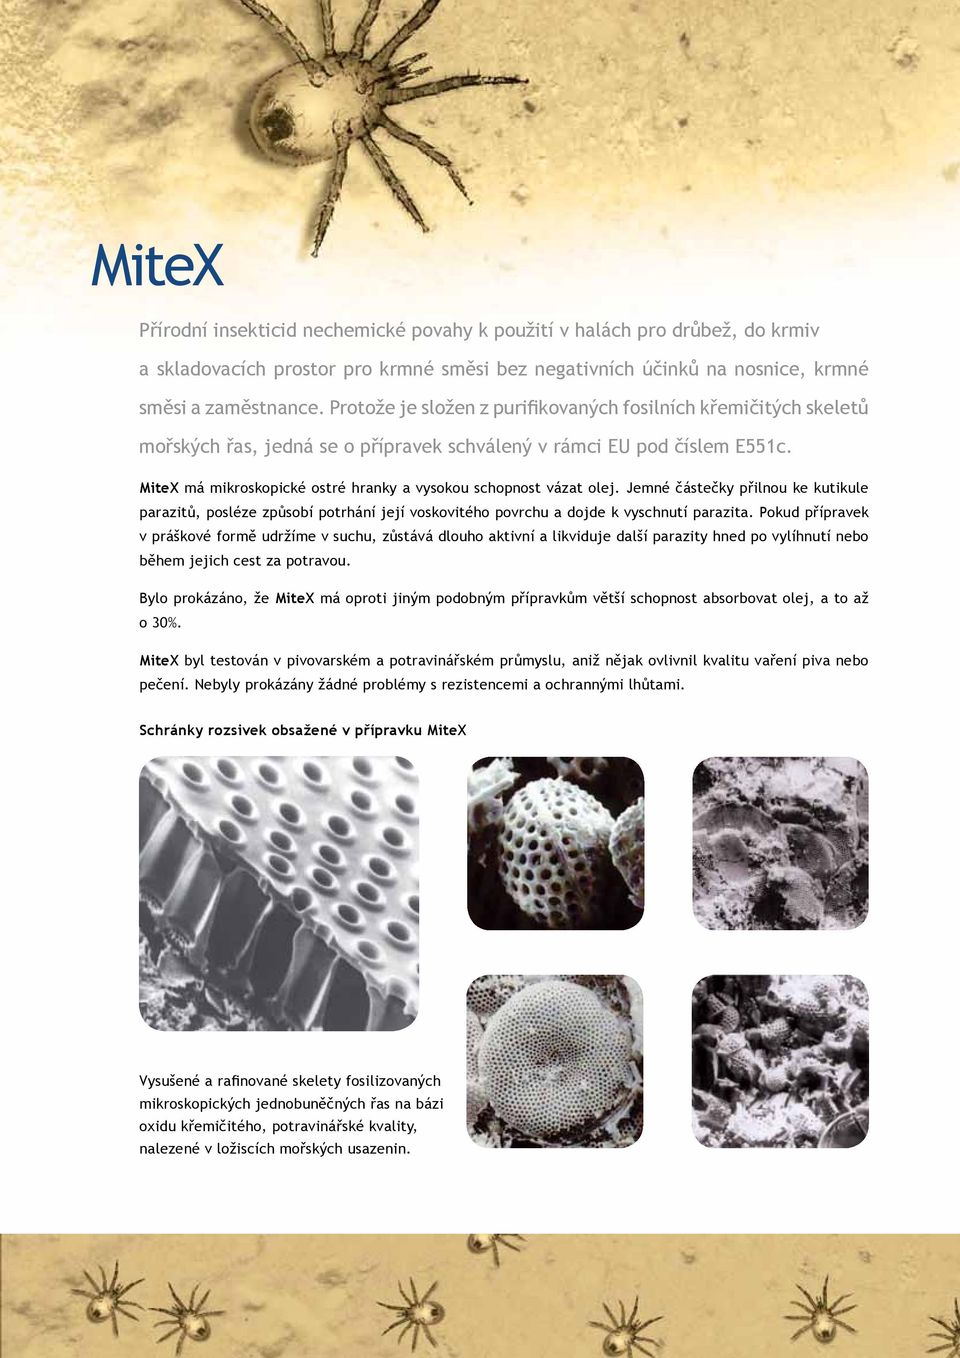 MiteX má mikroskopické ostré hranky a vysokou schopnost vázat olej. Jemné částečky přilnou ke kutikule parazitů, posléze způsobí potrhání její voskovitého povrchu a dojde k vyschnutí parazita.